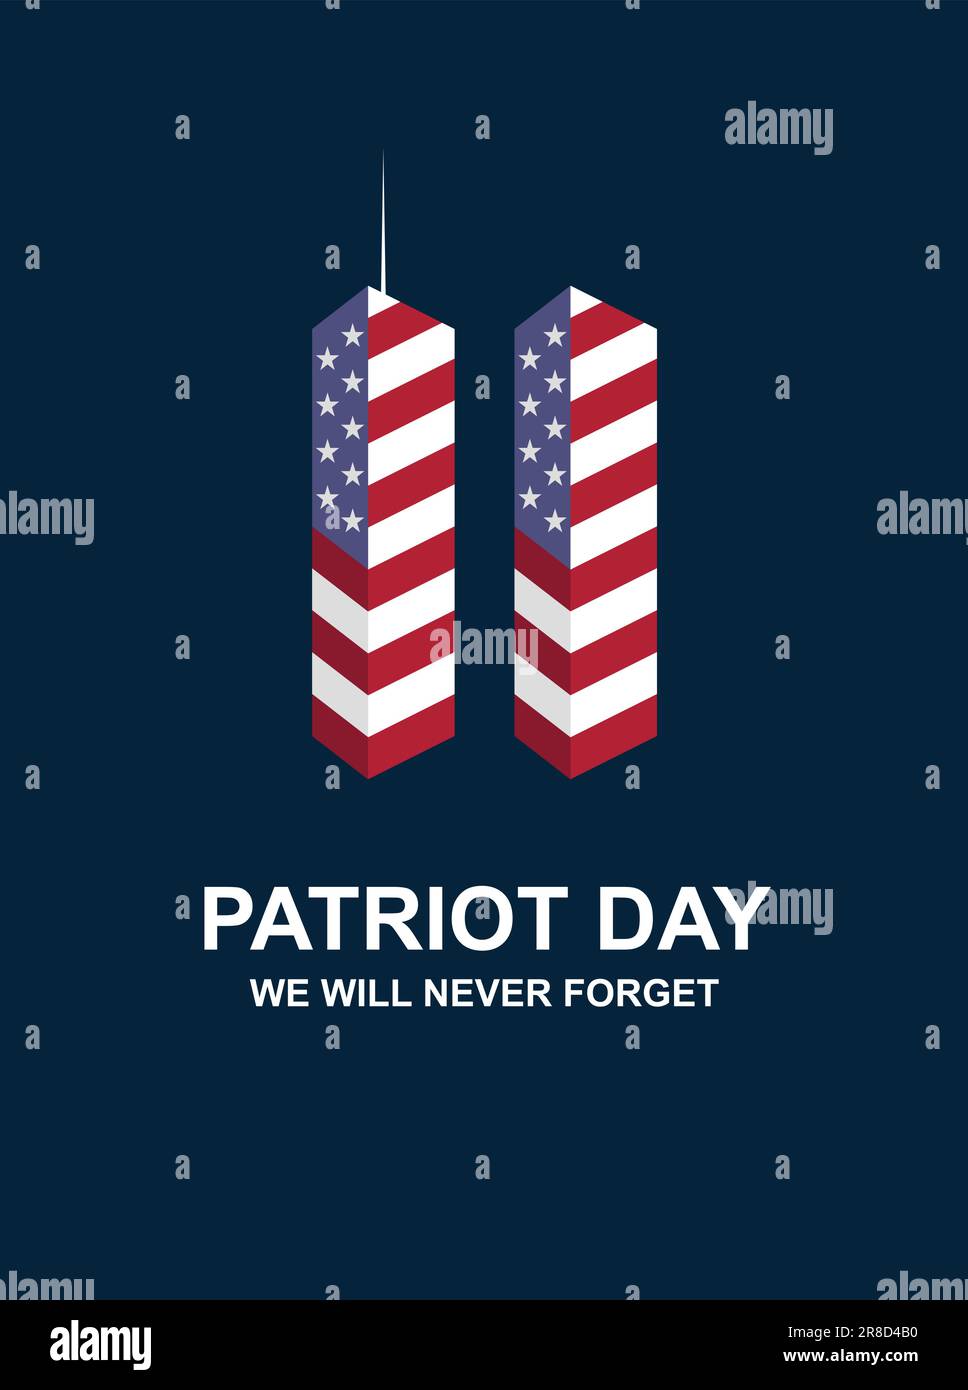 Patriot Day 11. September 2001. Vector 9,11 USA-Banner US-Flagge, 911-Gedenkstätte mit zwei Türmen und wir werden die Schriftzeichen auf blauem Hintergrund nie vergessen Stock Vektor